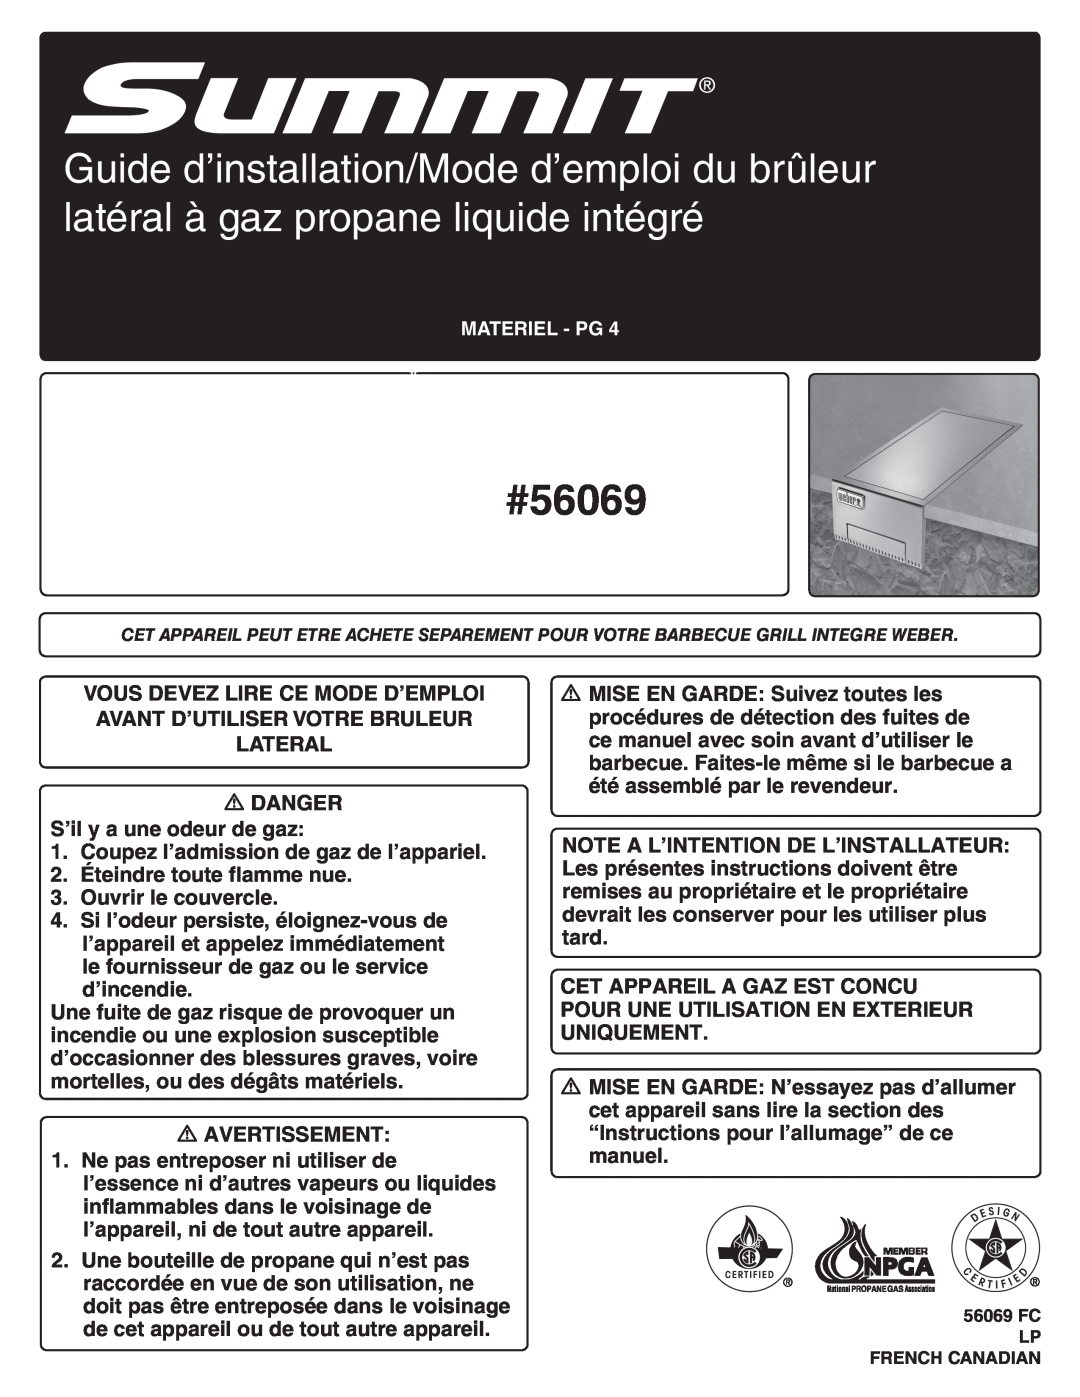 Weber manual 42376, #56069, DANGER S’il y a une odeur de gaz 